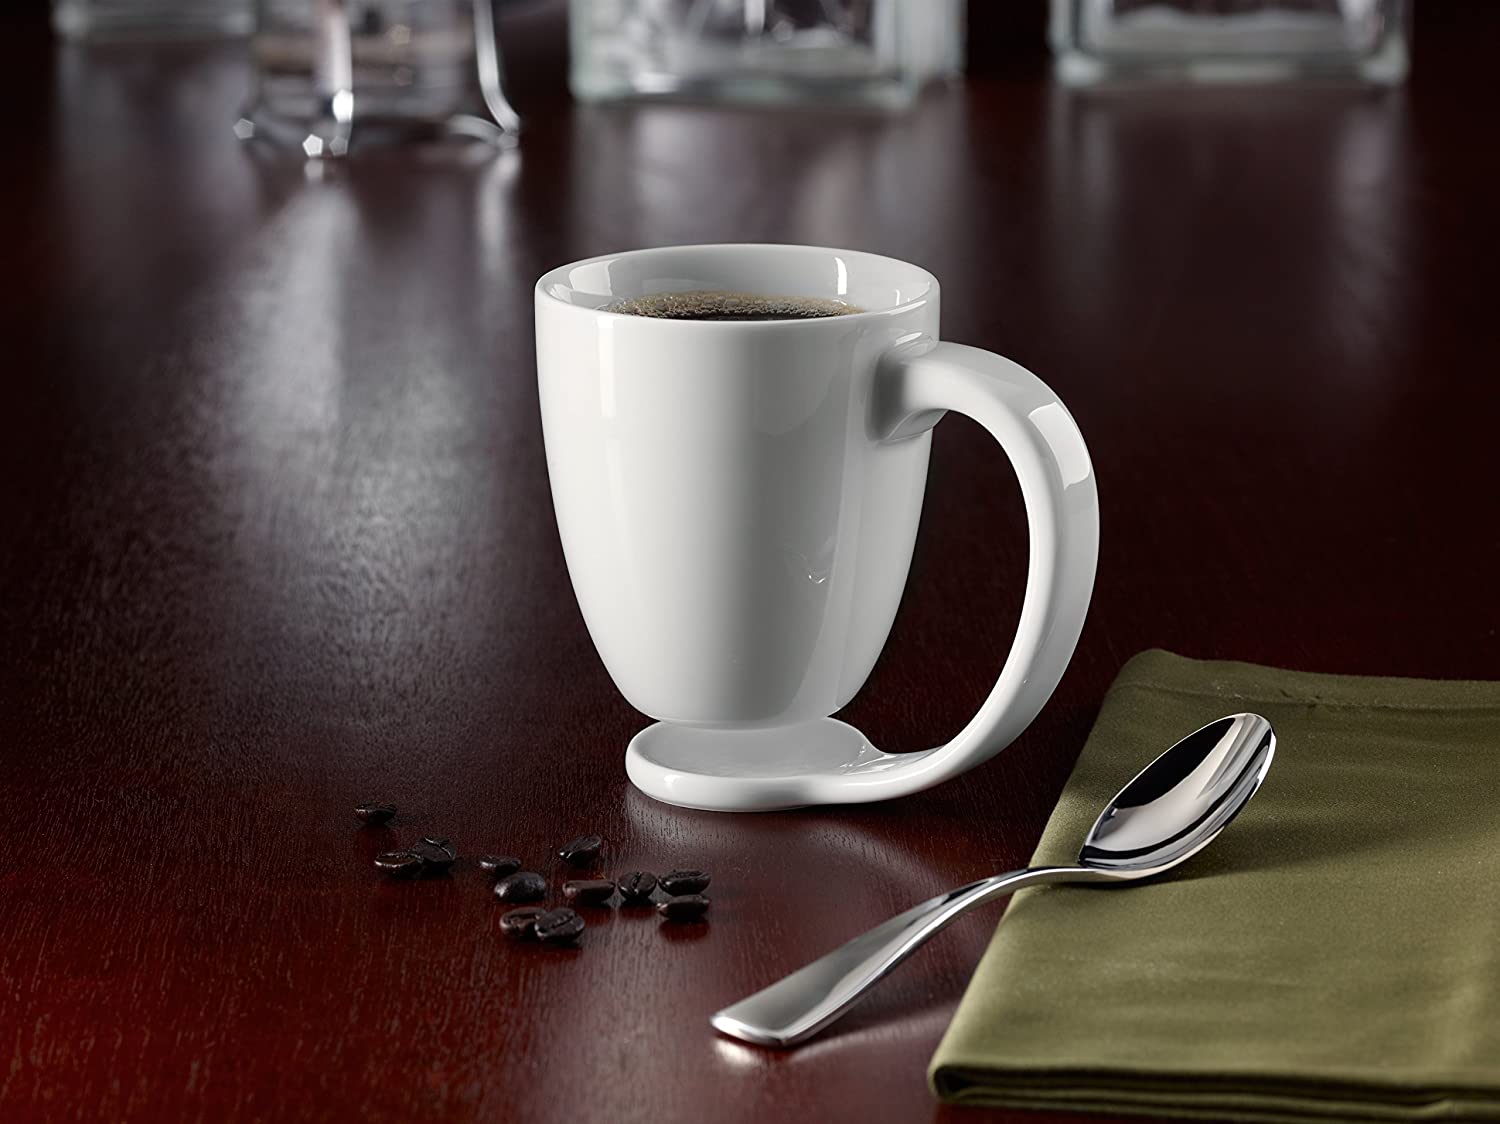 The Floating Coffee Mug - Hovering mug